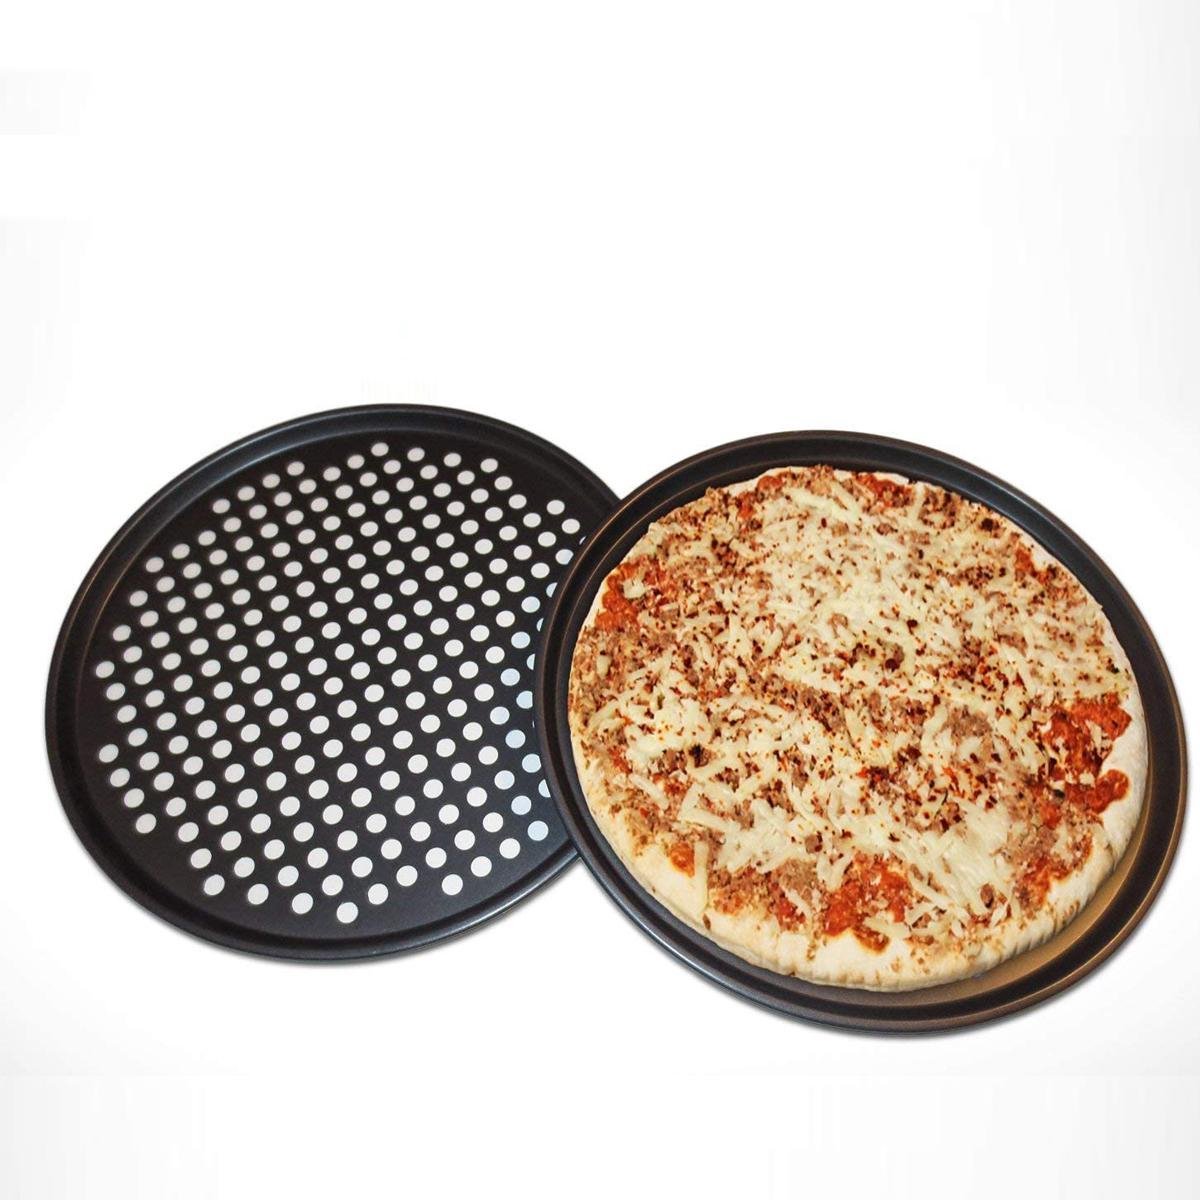 форма для пиццы с дырочками как пользоваться в духовке фото 10